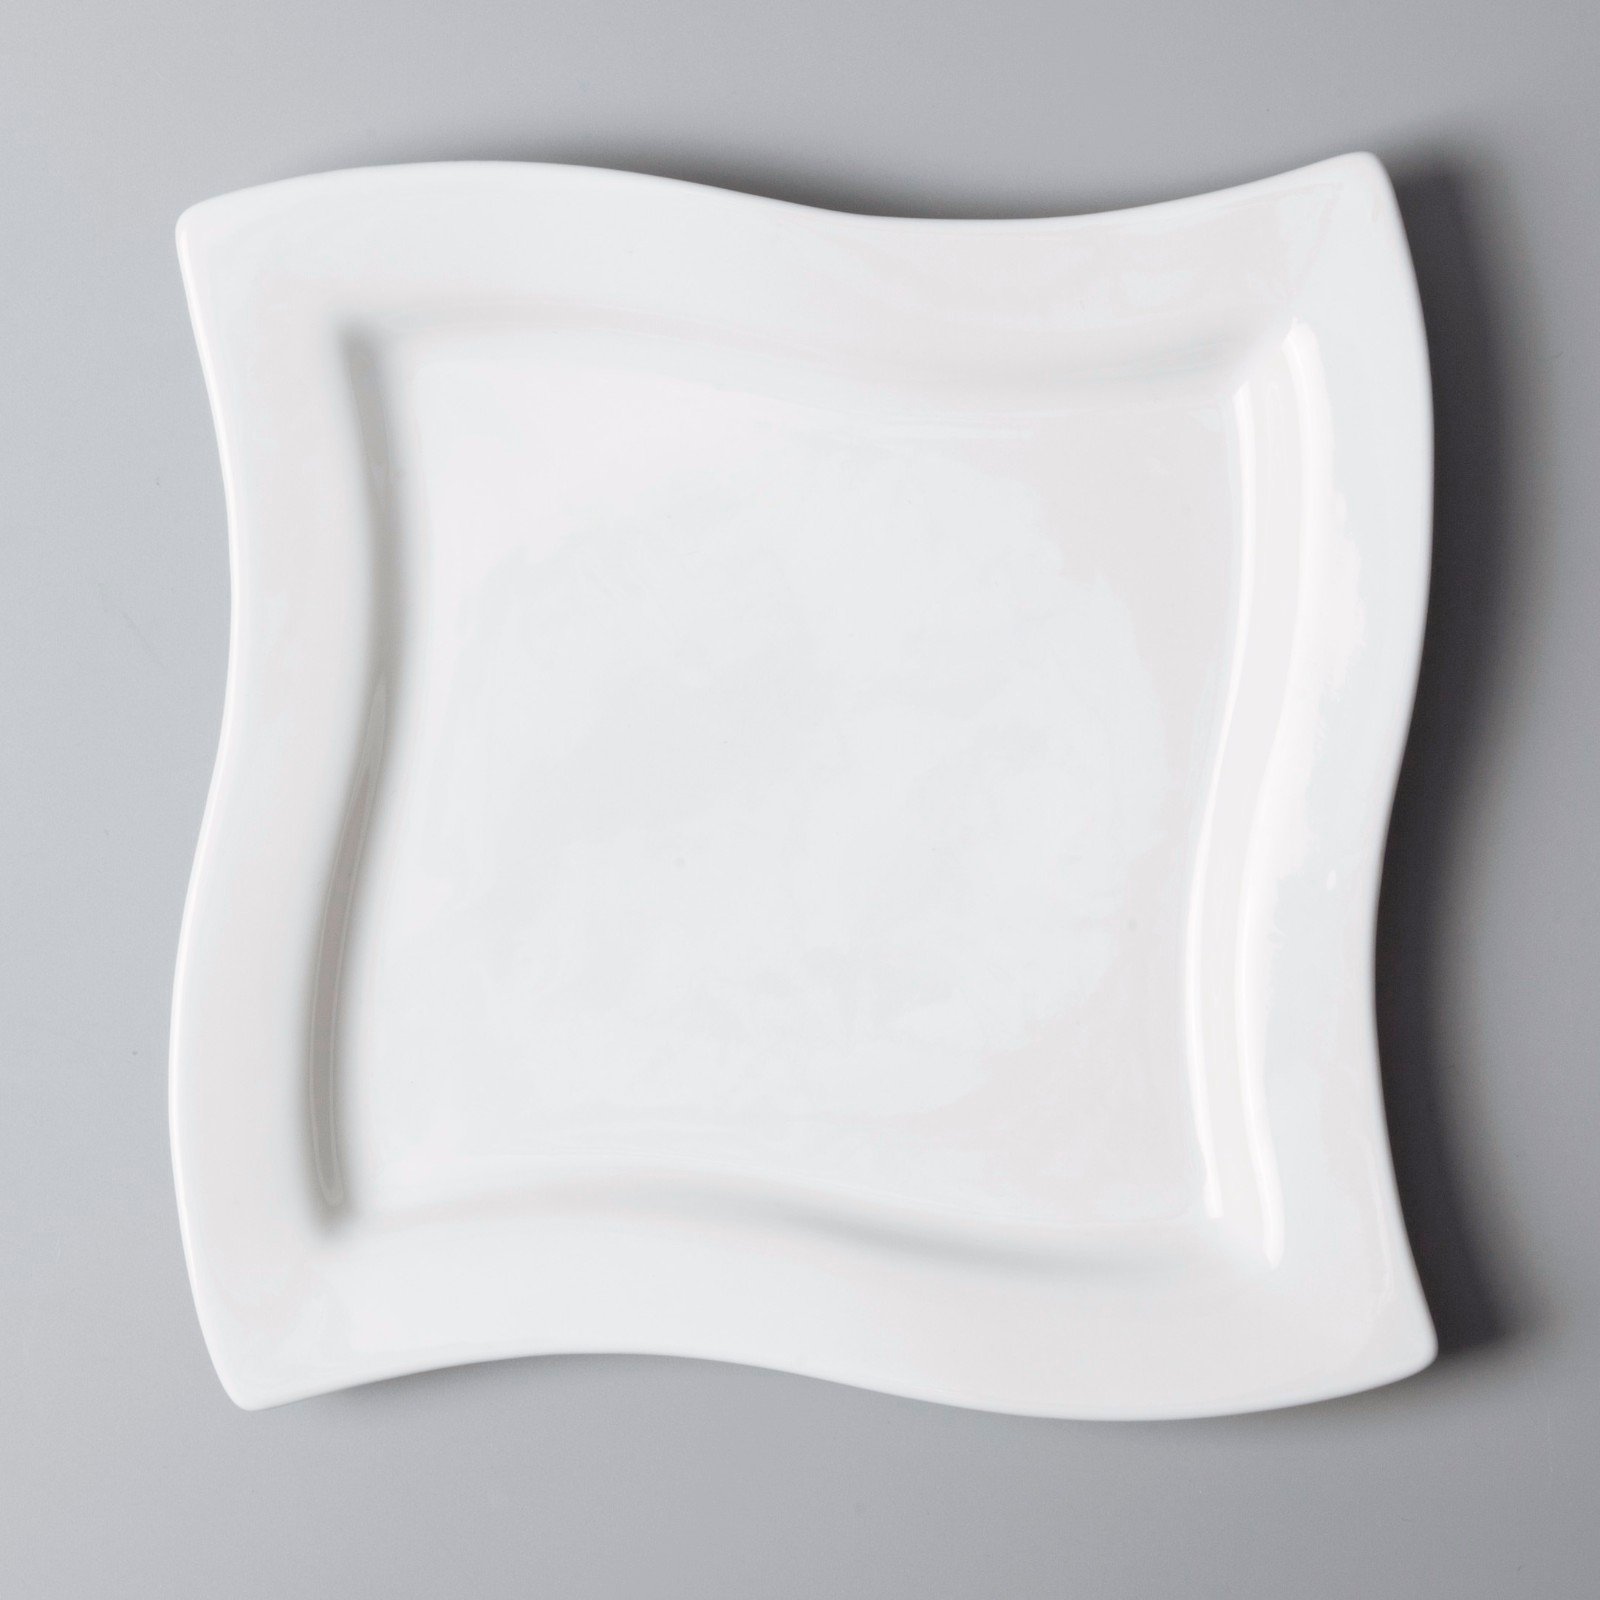 Two Eight bulk white bone china dinnerware from China for bistro-4